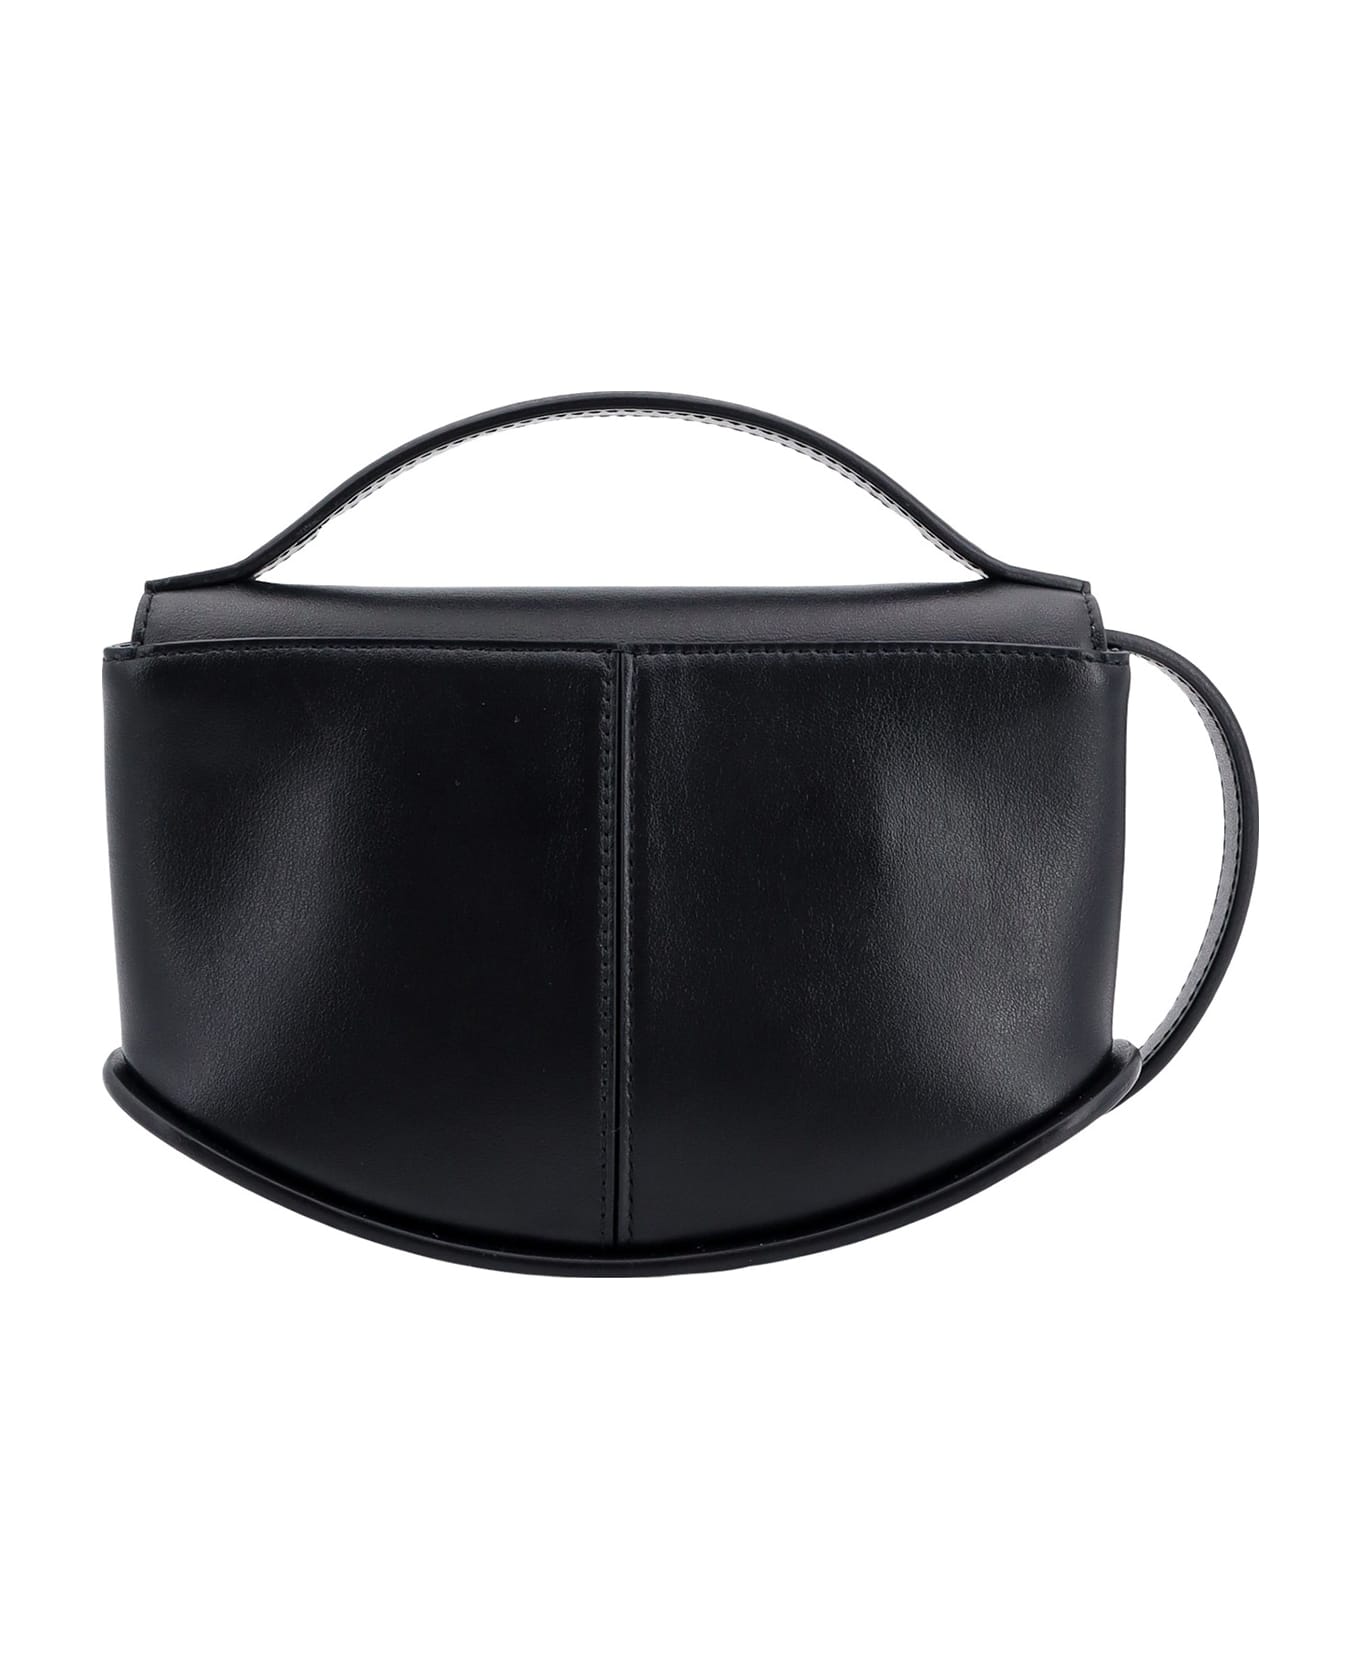 Durazzi Milano Swing Mini Handbag - Black